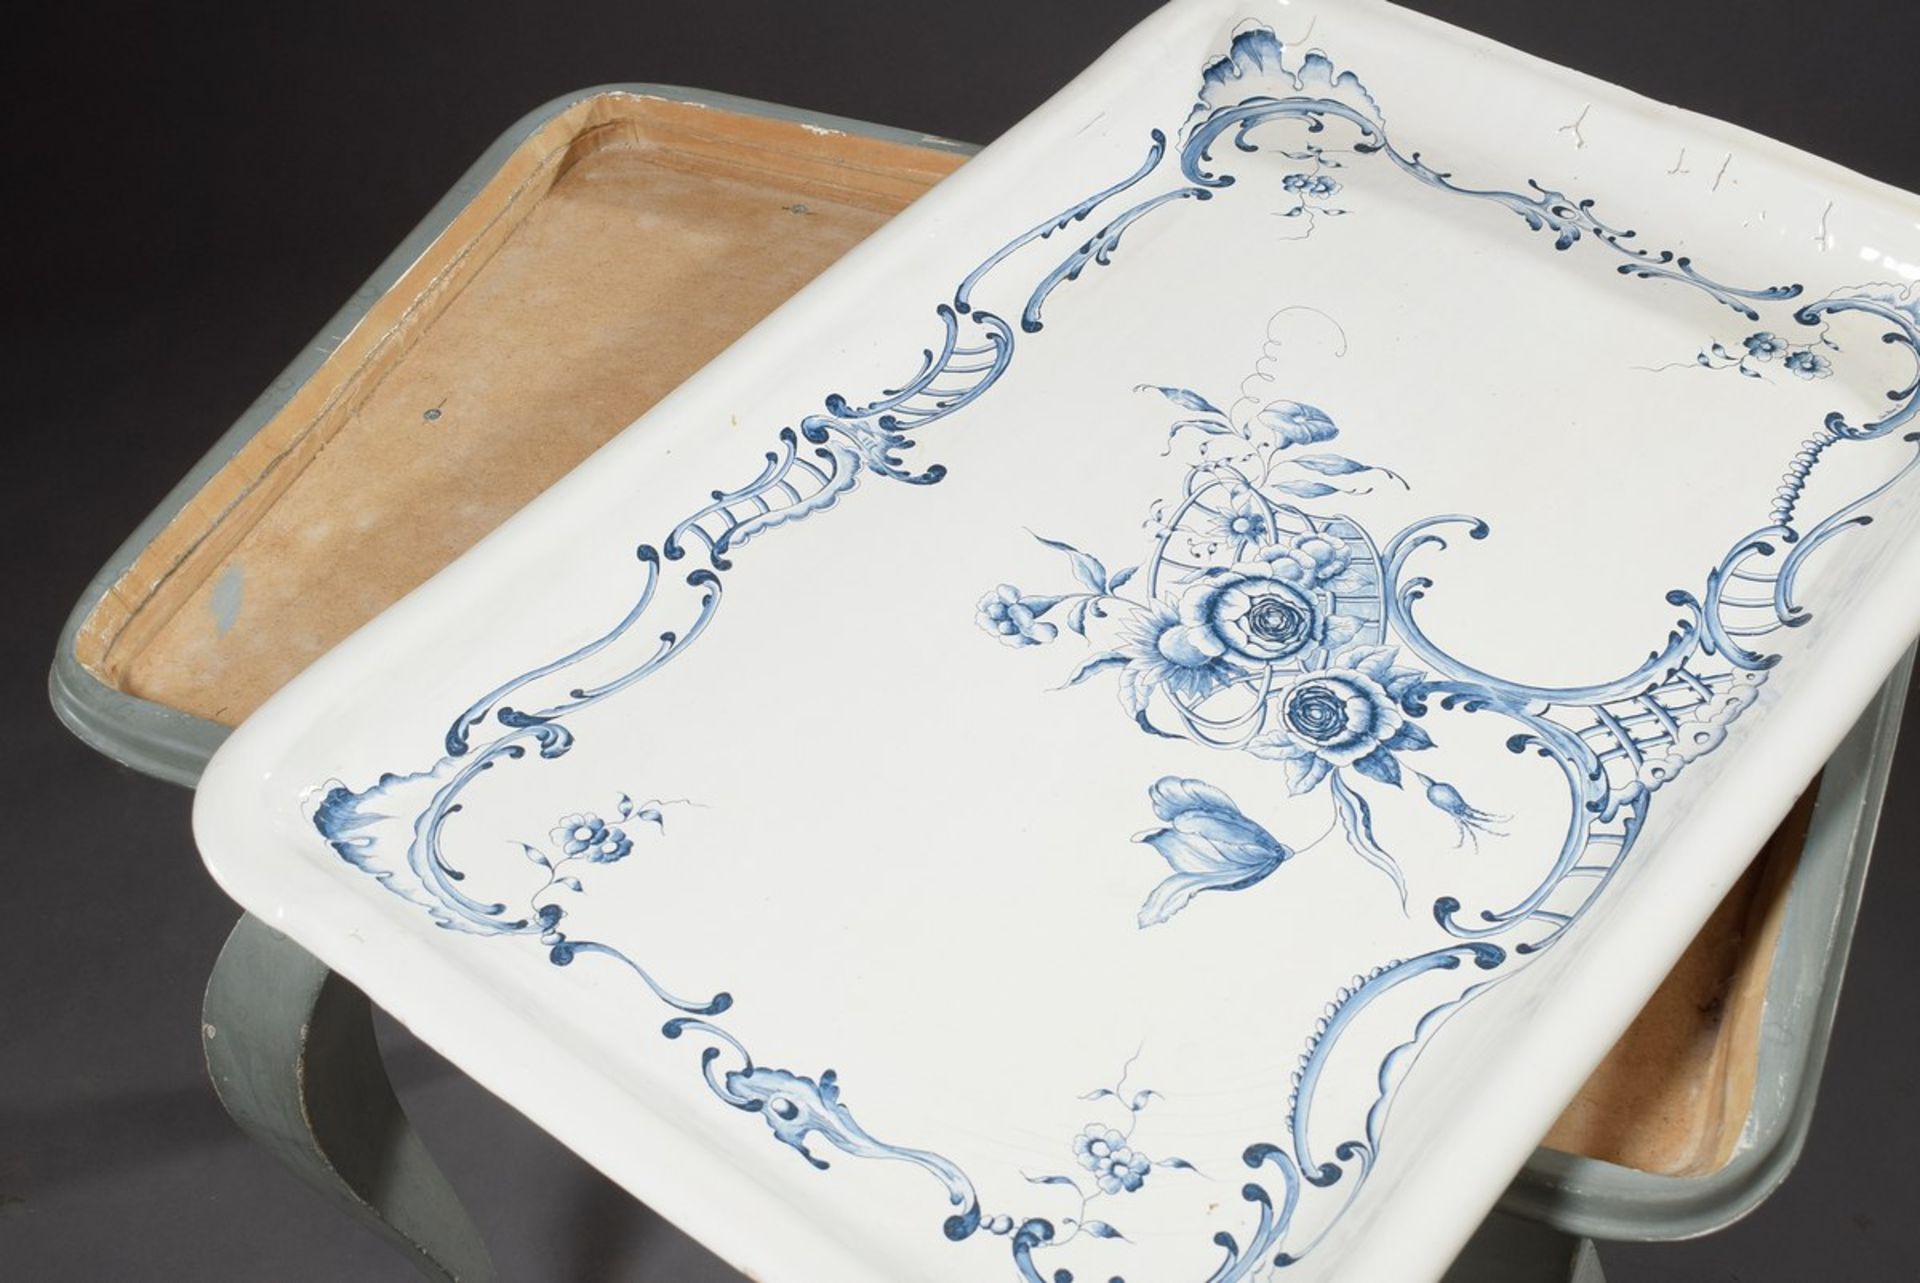 Teetisch mit Fayence Platte "Rocaille mit Blumenranken" auf grau-blau gefasstem Weichholz Gestell - Bild 3 aus 4